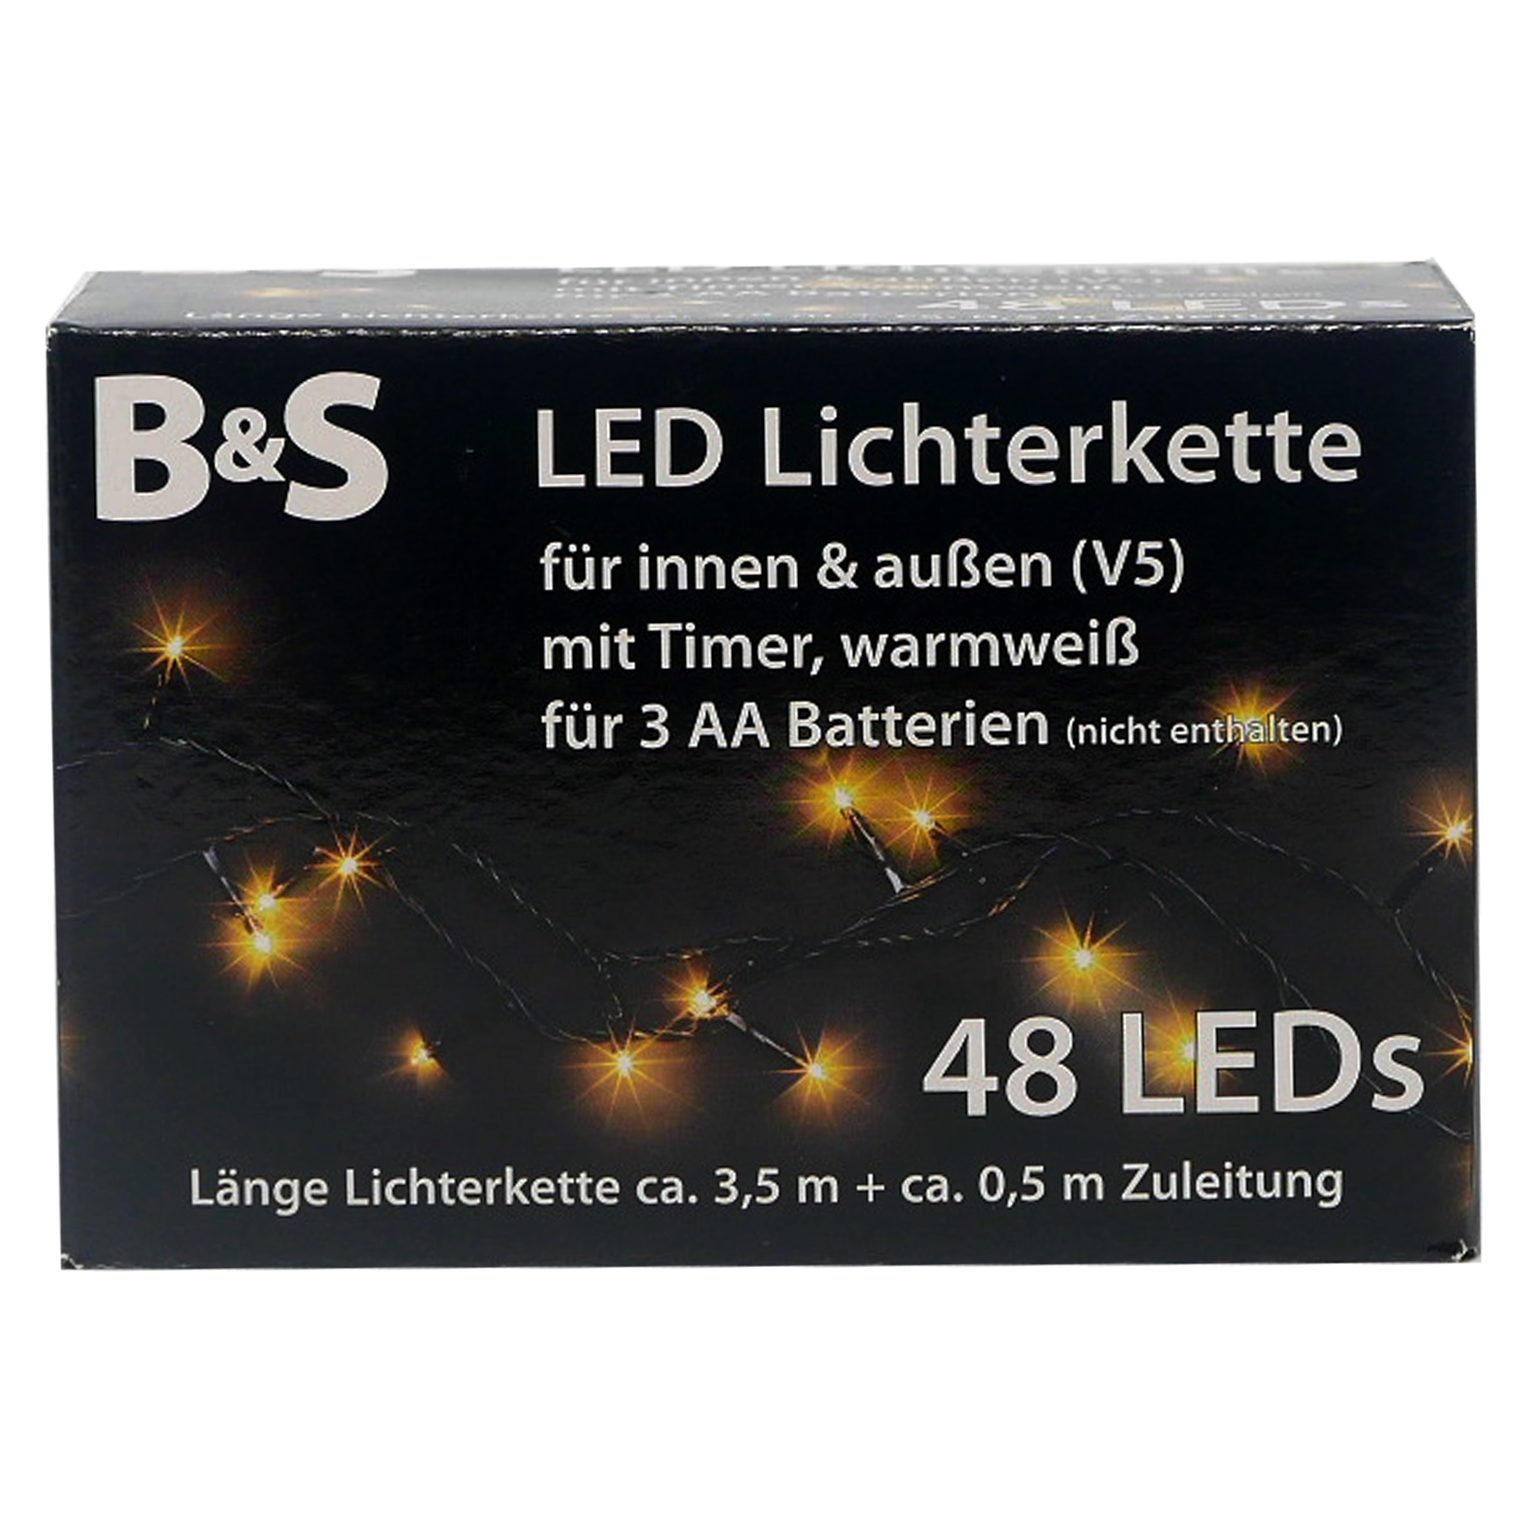 B&S LED-Lichterkette LED Batterie Lichterkette mit 48 LEDs warmweiß Innenbereich